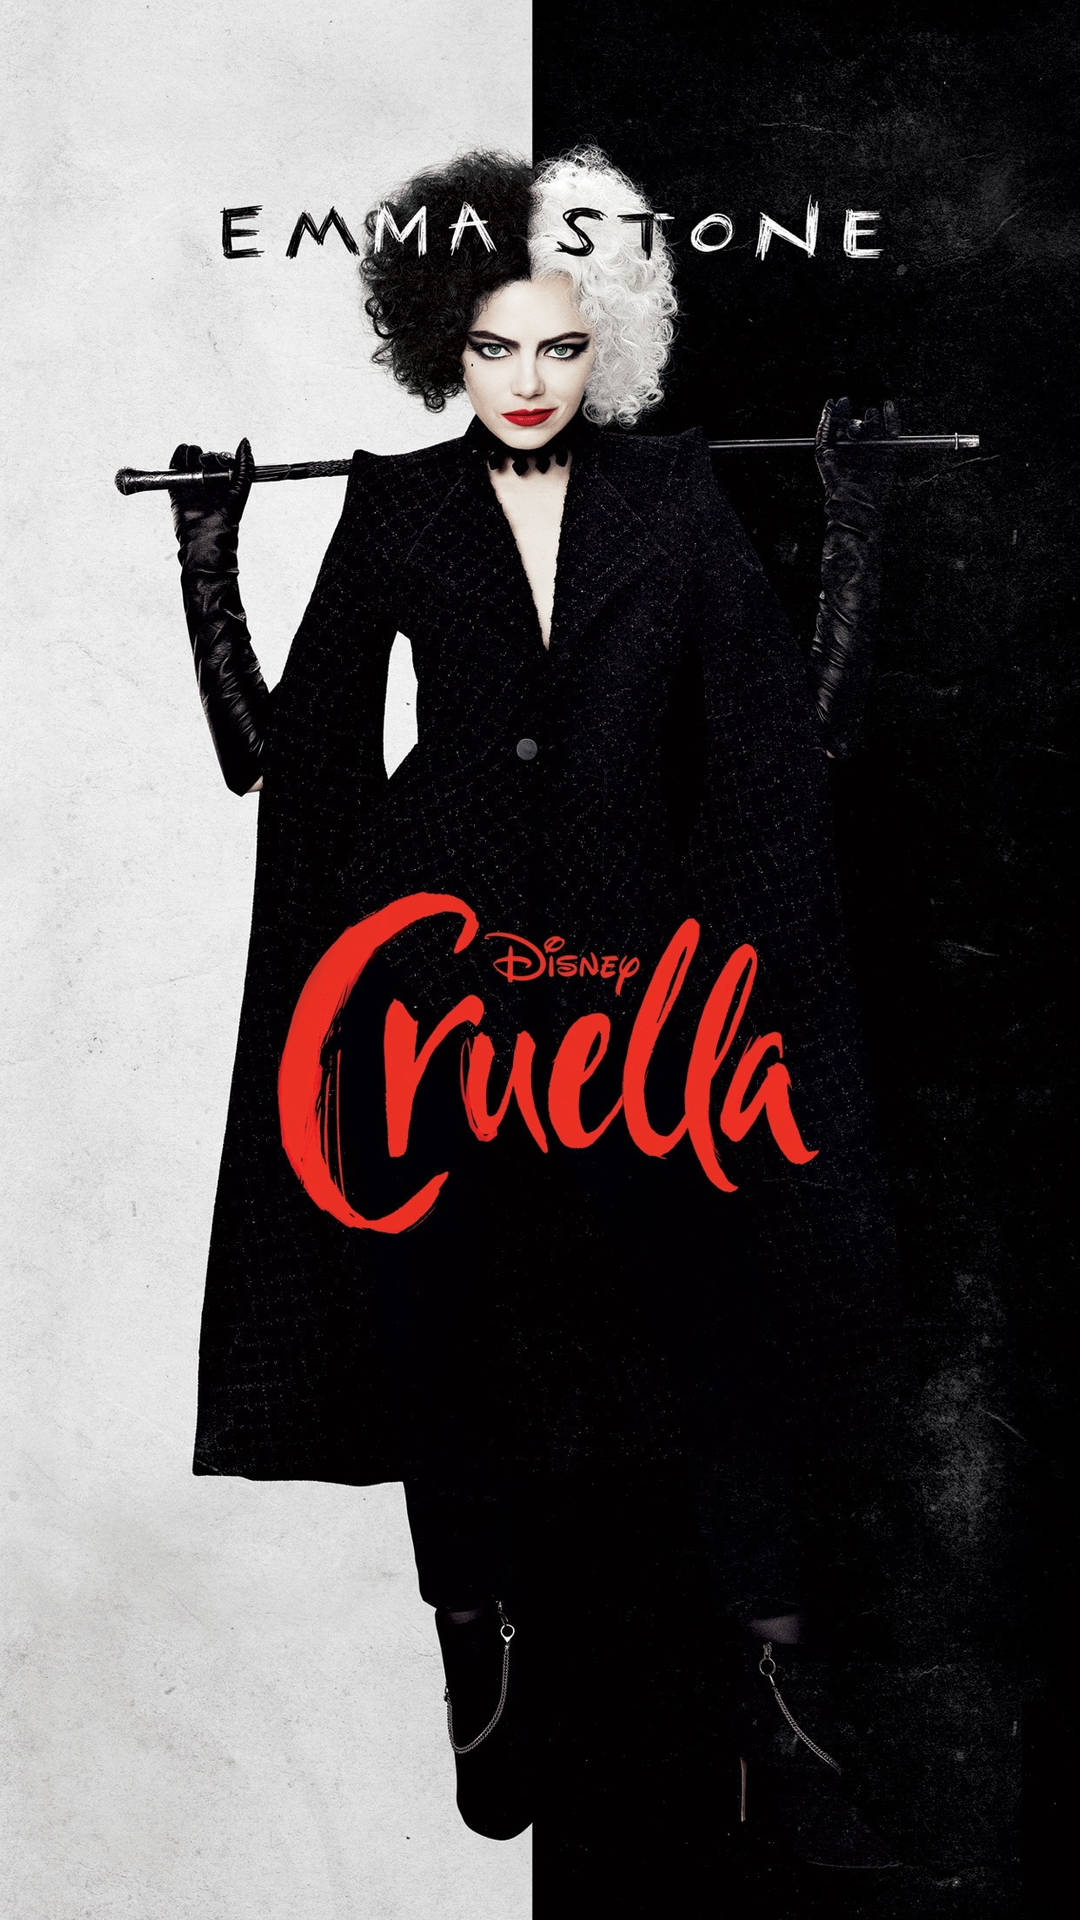 Cruella Emma Stone Movie Poster Wallpaper